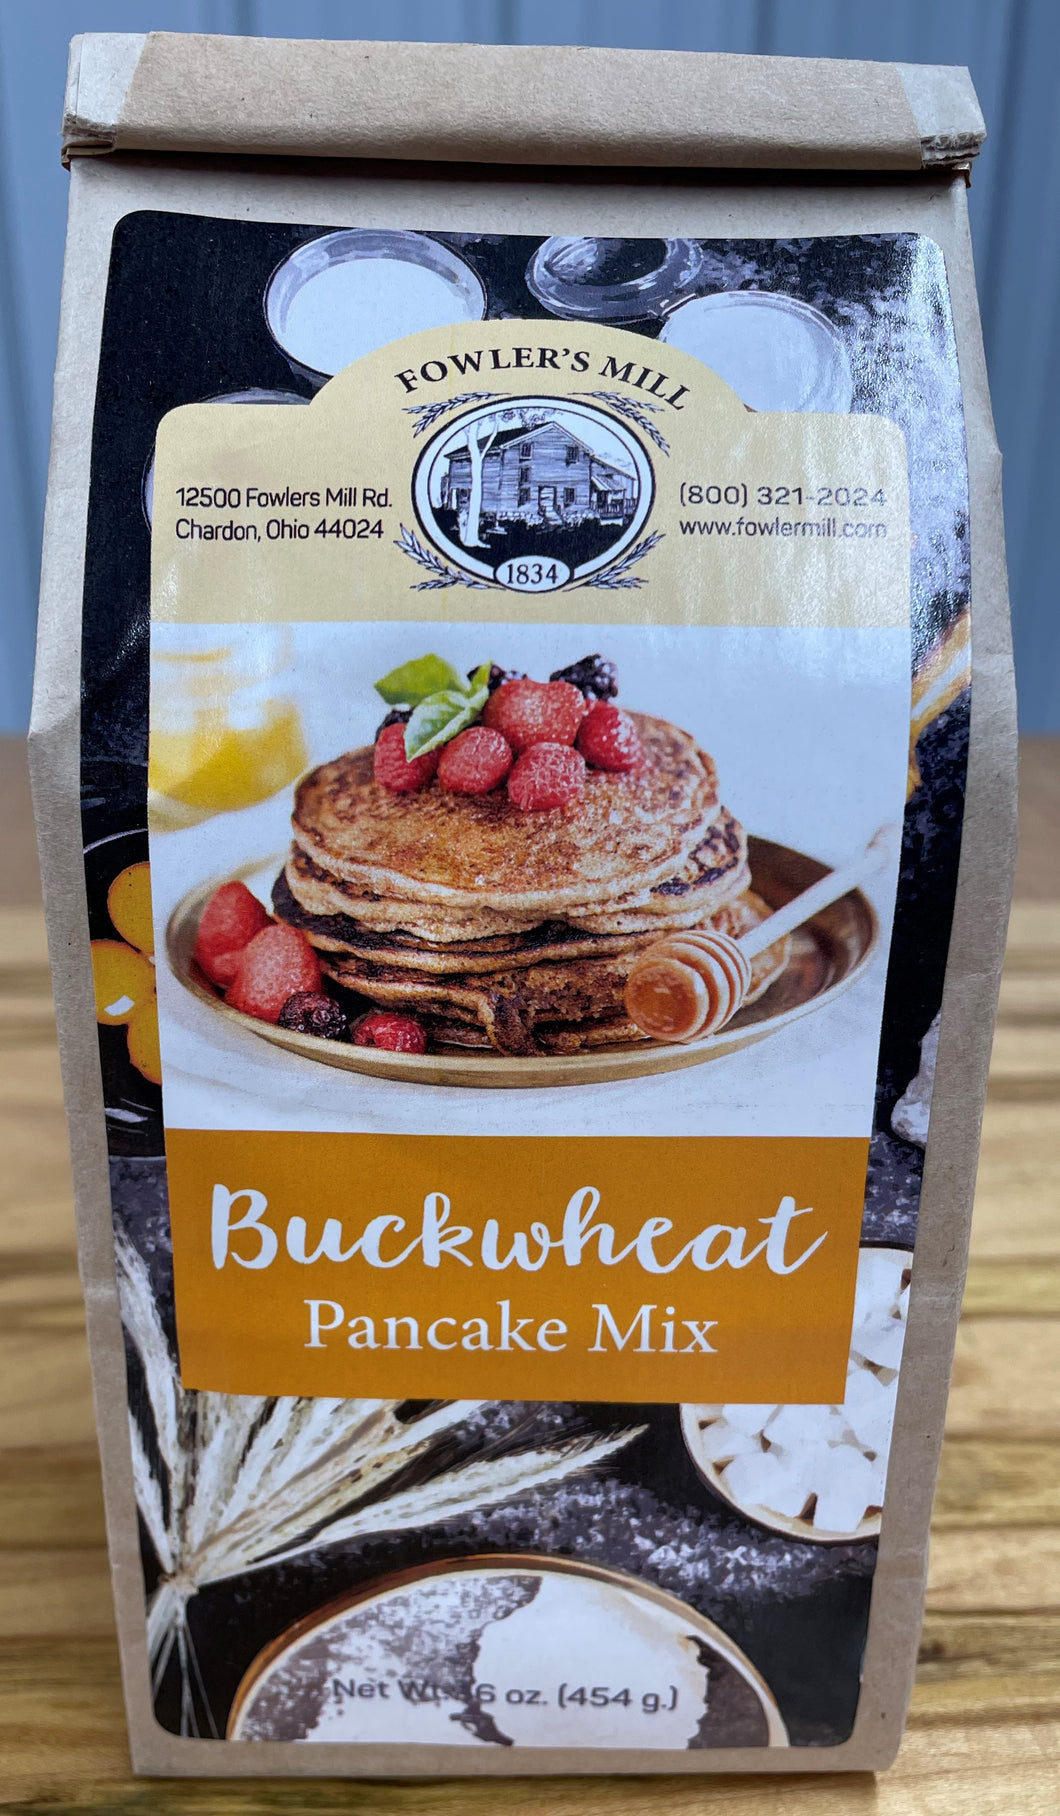 Fowler's Mill Buckwheat Pancake Mix